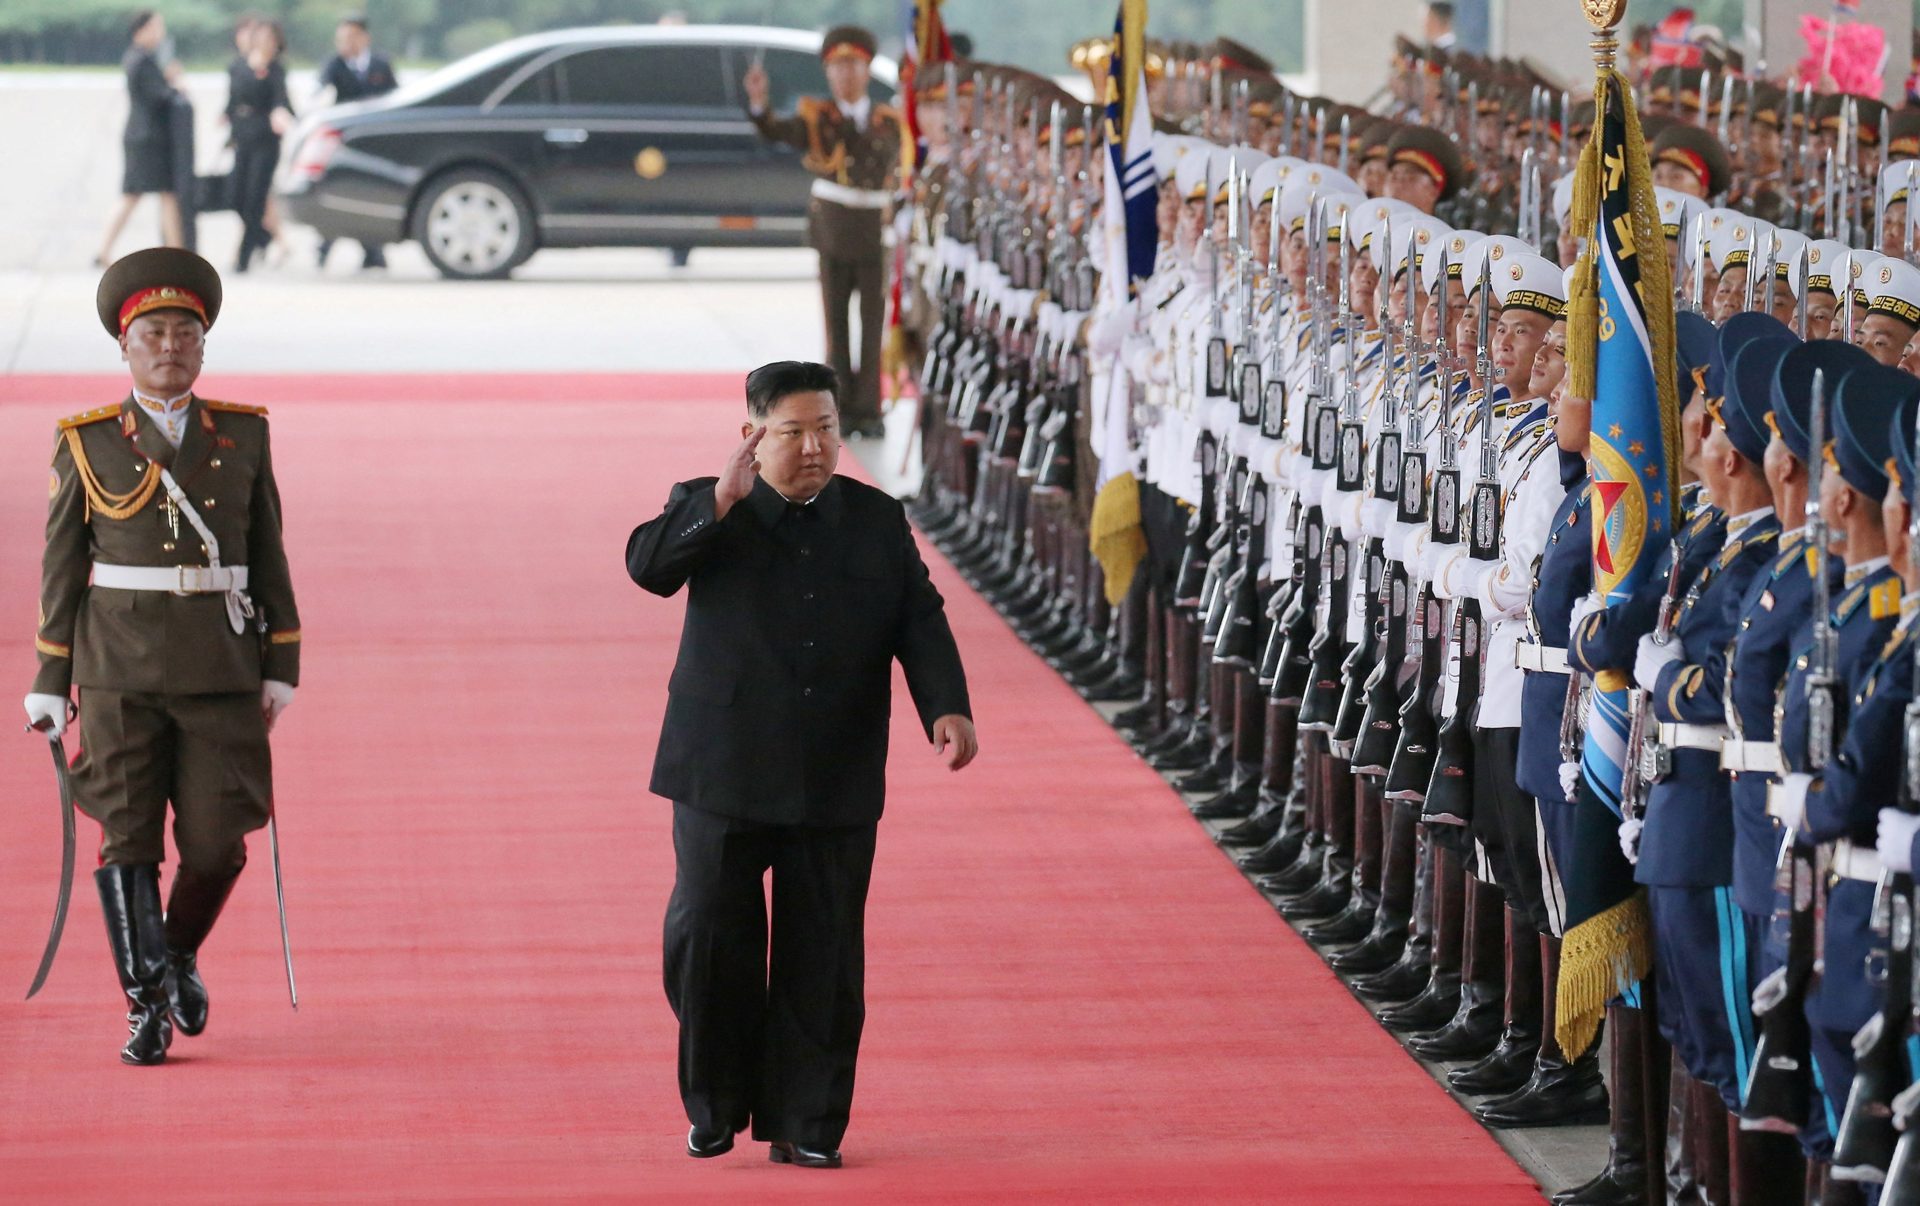 Le leader nord-coréen prône un tournant historique militaire